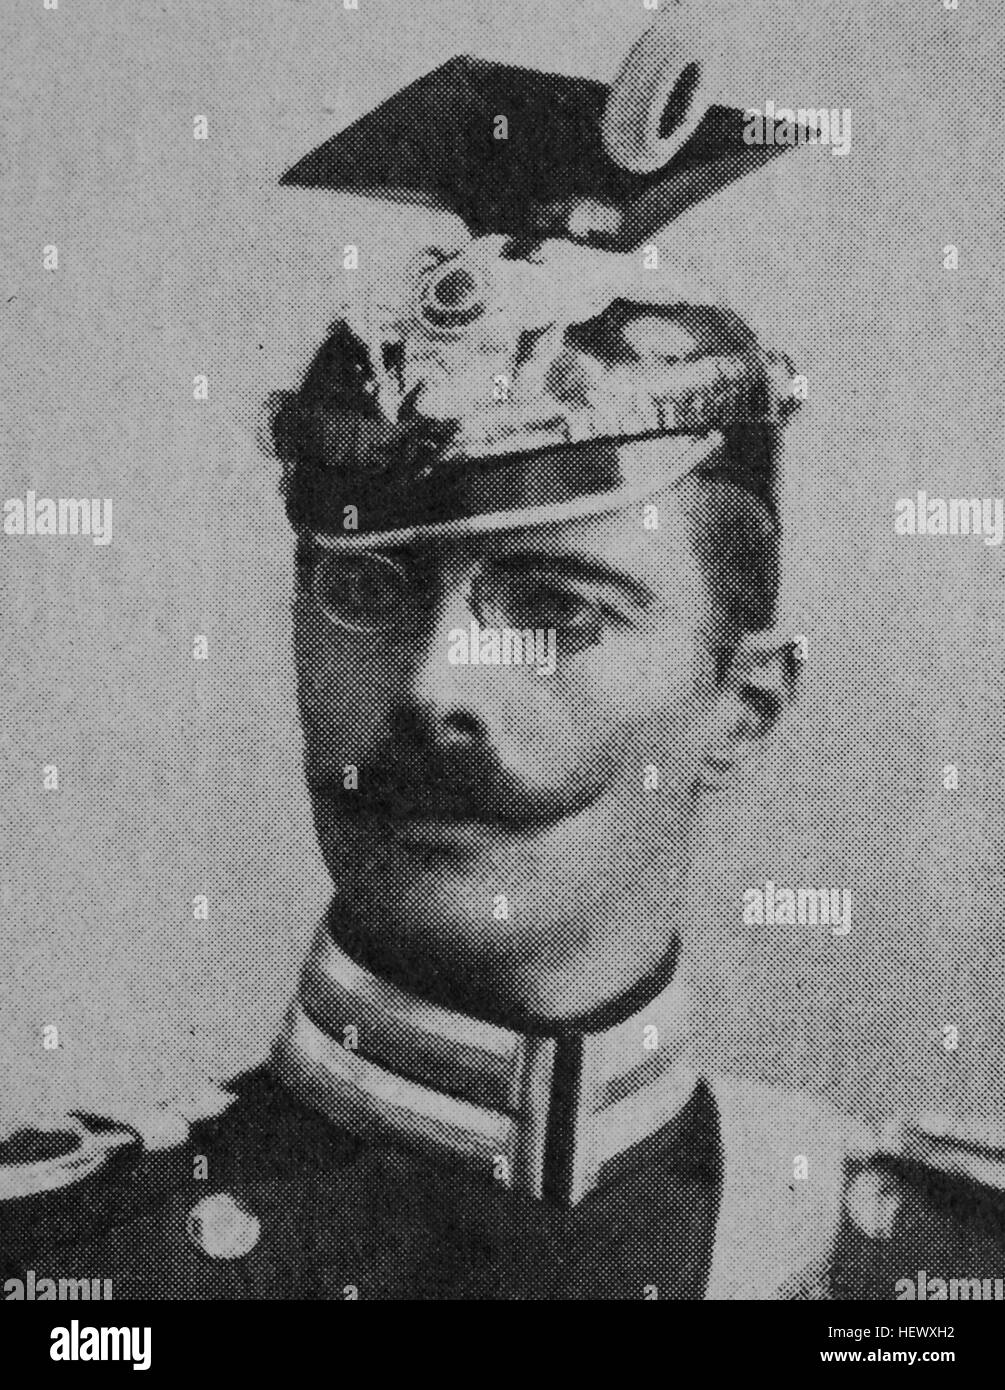 Count Gustav Adolf von Goetzen, 12 mai 1866 - 2 décembre 1910, était un explorateur allemand et Gouverneur de l'Afrique orientale allemande, photo de 1895, l'amélioration numérique Banque D'Images